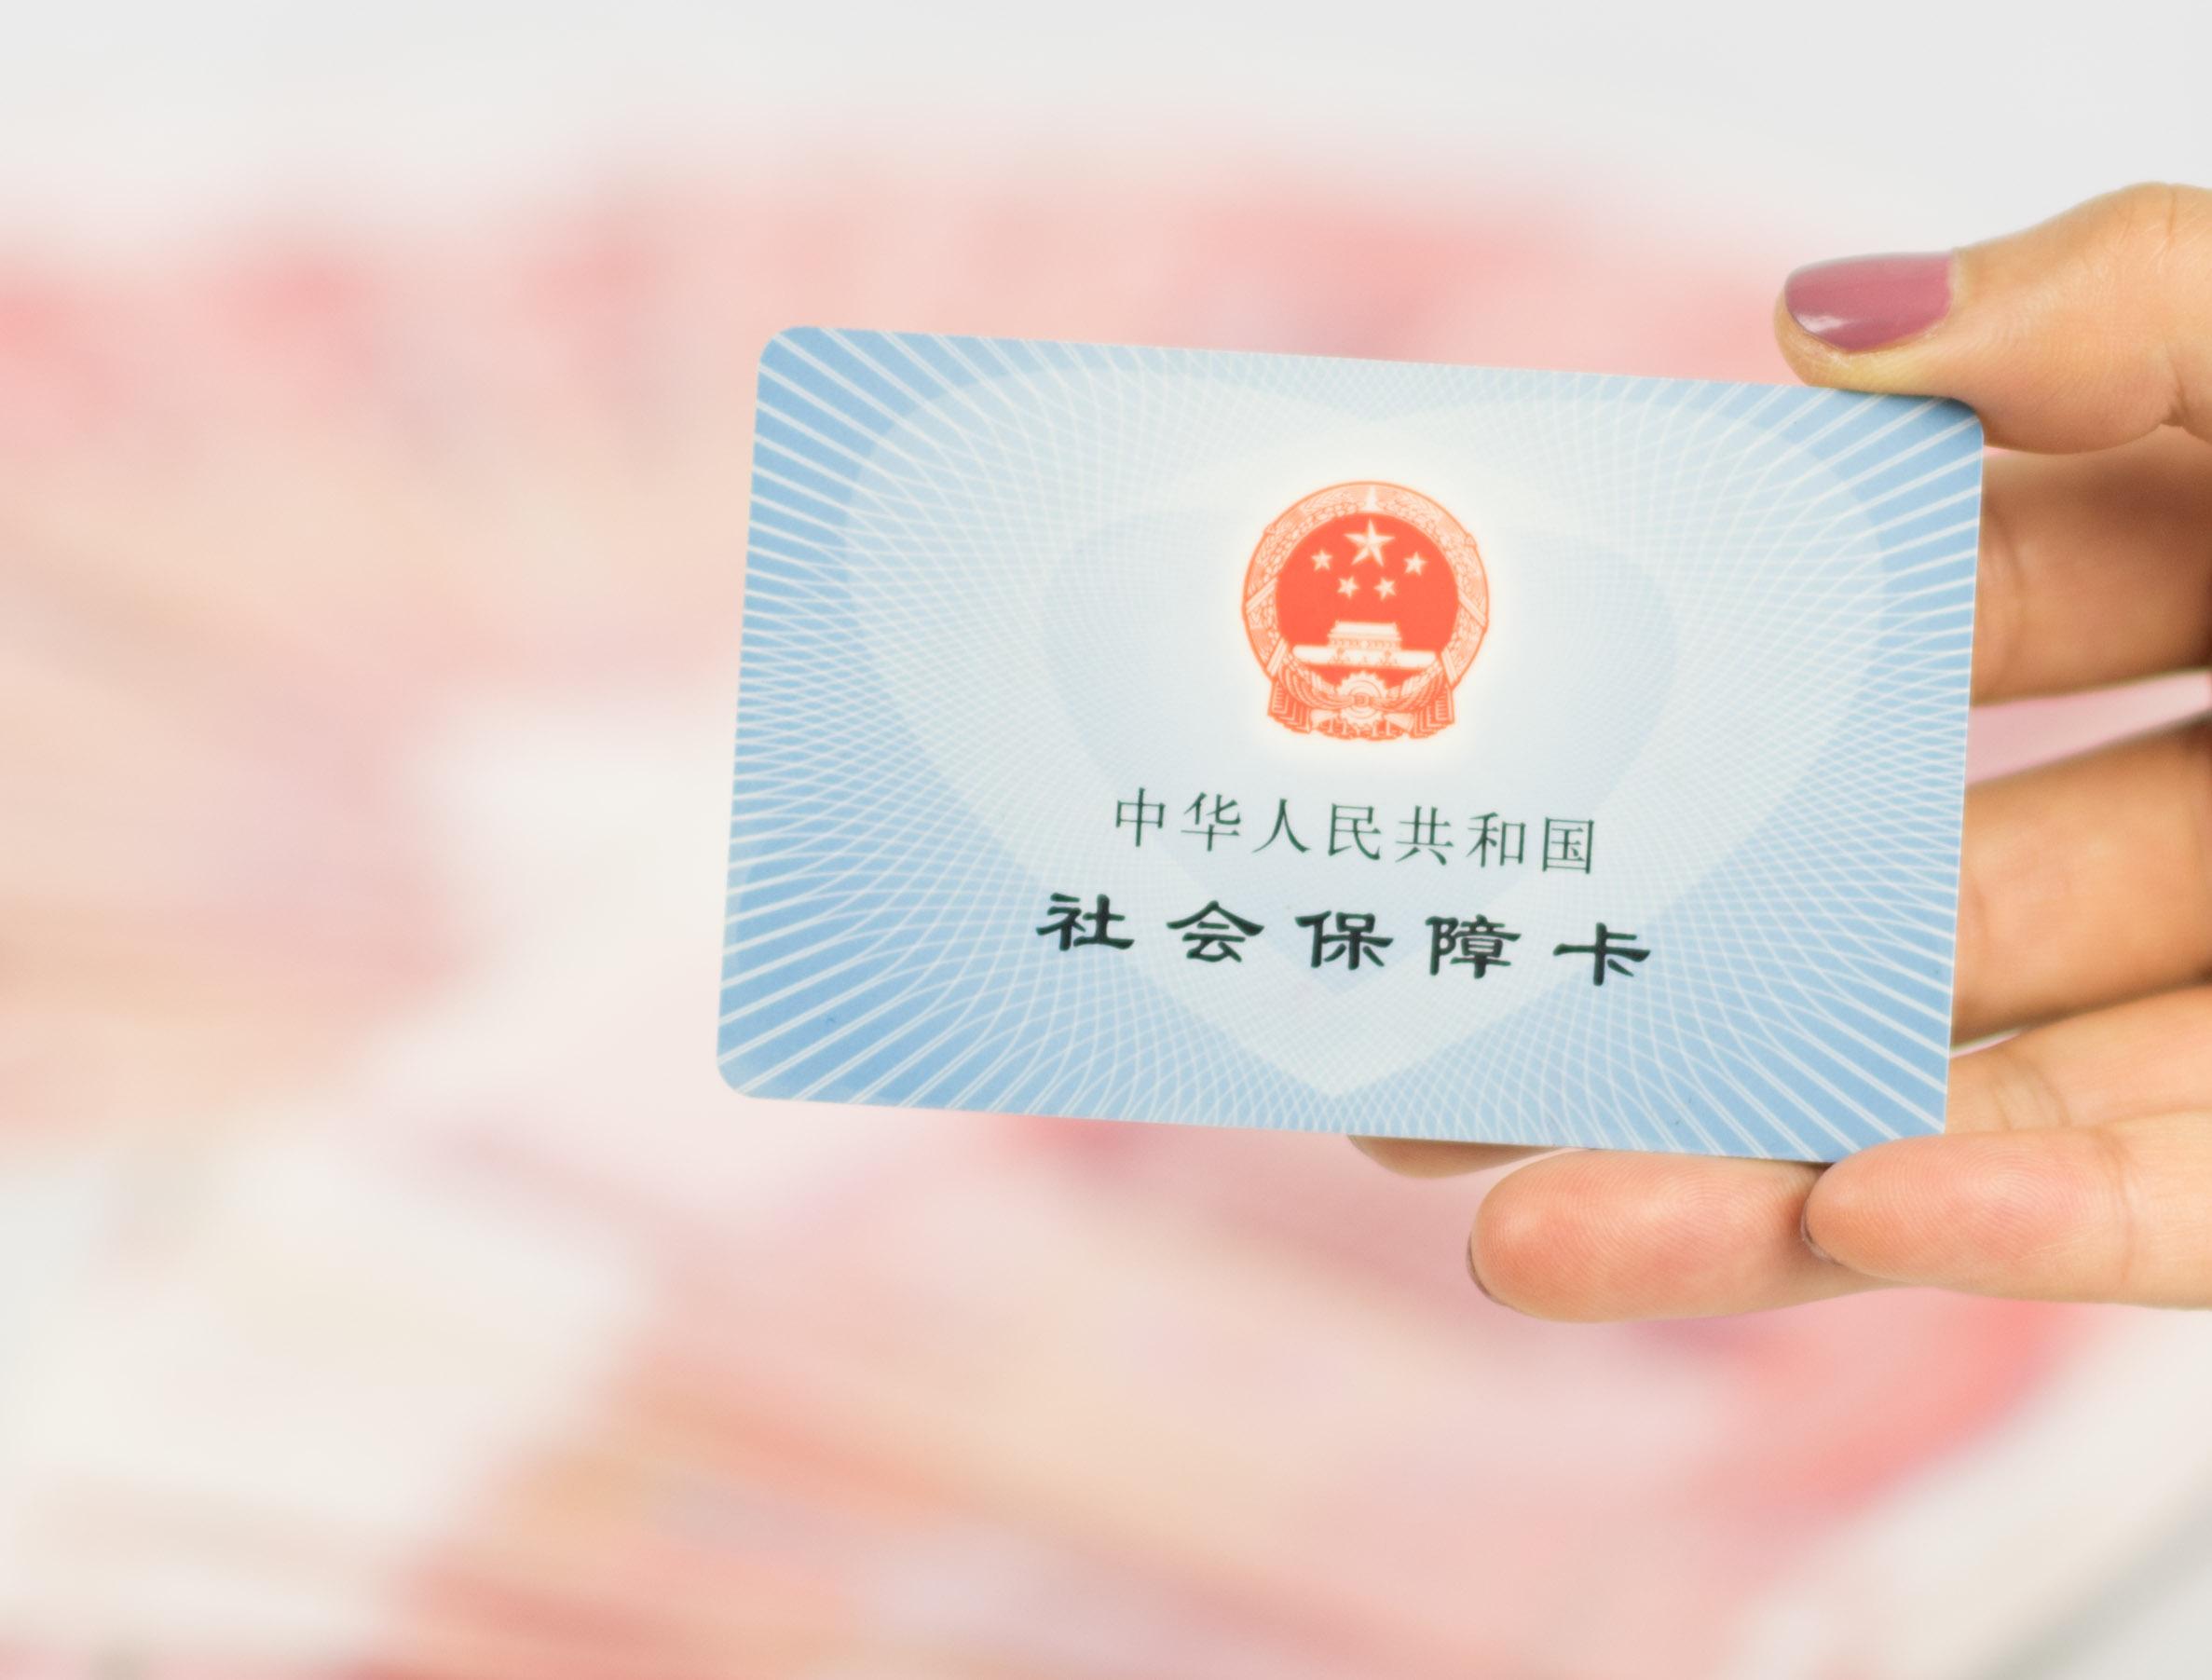 在北京交的社保,只给了一张医保卡,那每个月的医保钱是在哪? 